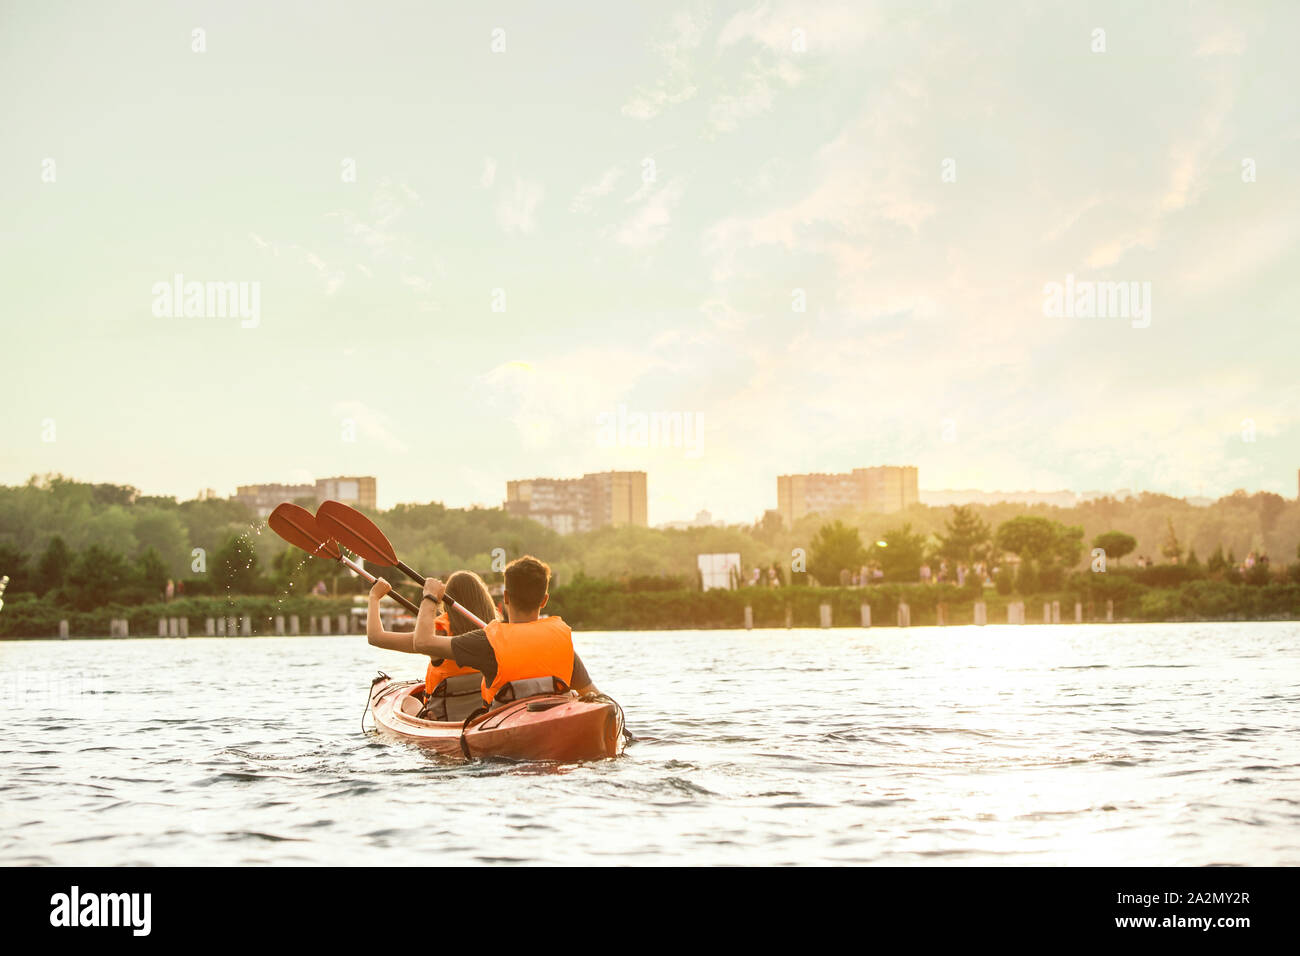 Glückliche Junge kaukasier Paar Kajakfahren auf dem Fluss mit Sonnenuntergang im Hintergrund. Spaß in der Freizeit. Gerne männliche und weibliche Modell laughting auf dem Kajak. Sport, Beziehungen Konzept. Farbenfroh. Stockfoto